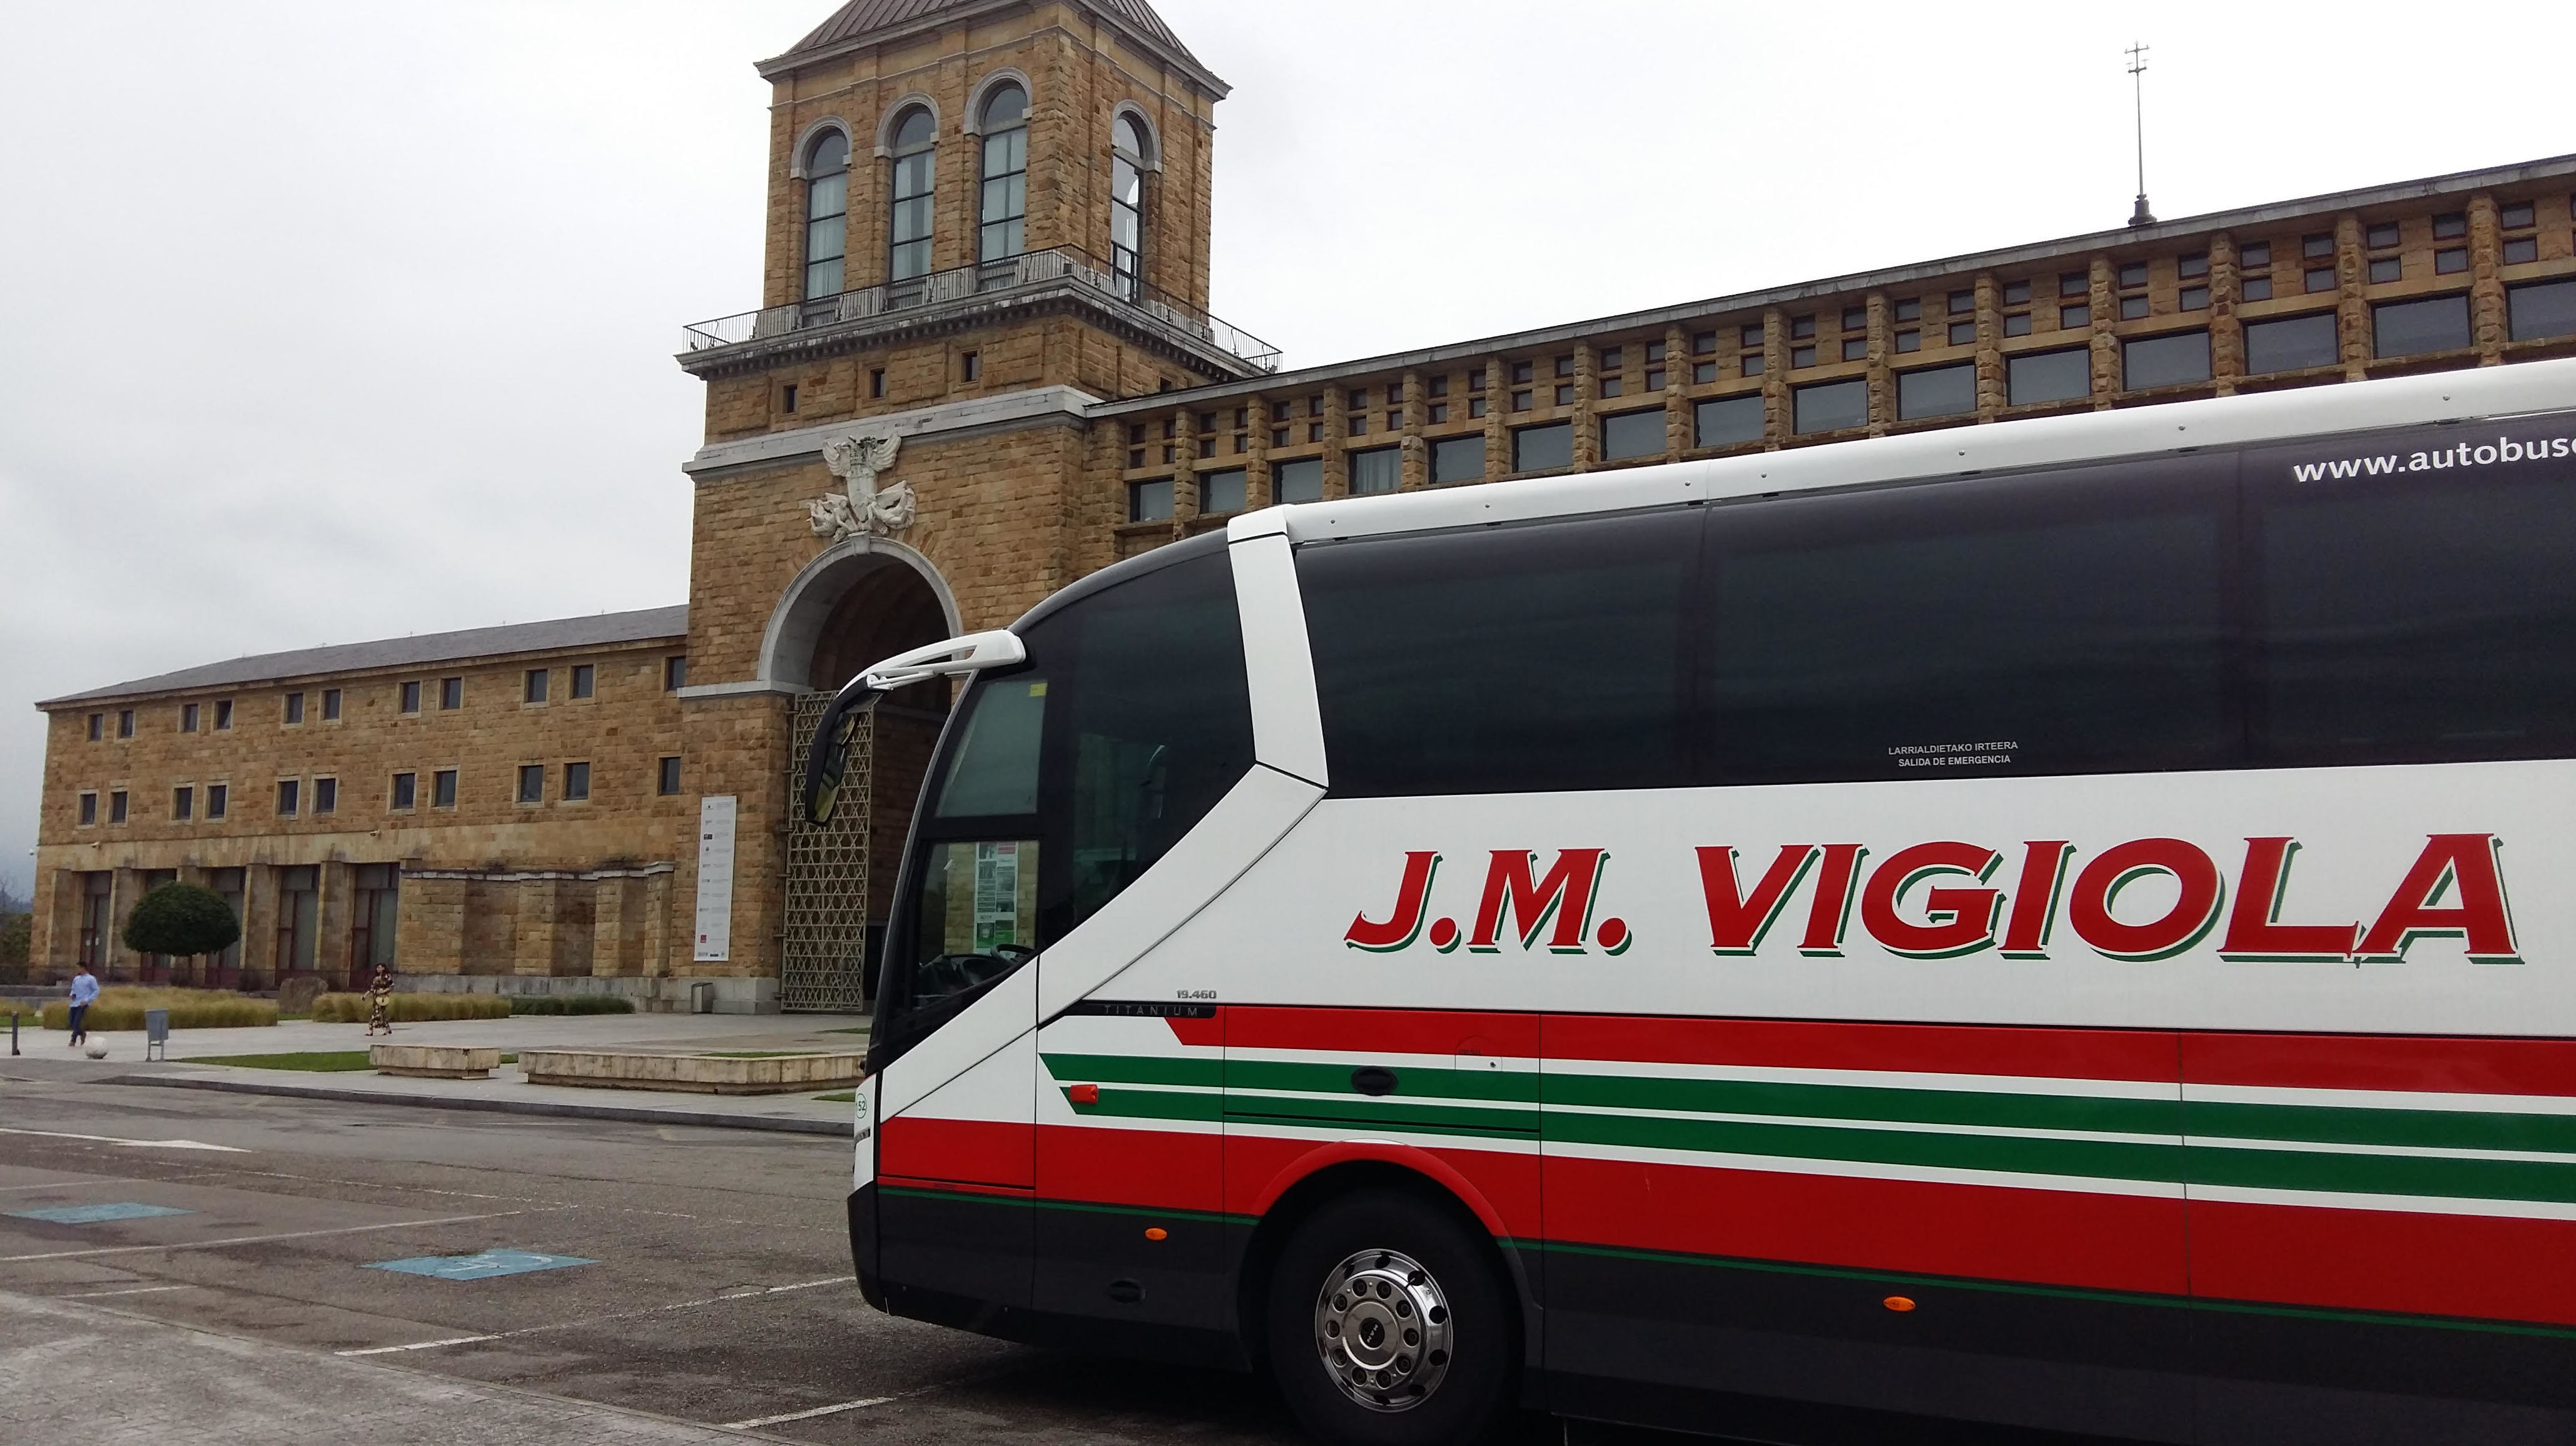 Foto 9 de Autobuses en Abanto Zierbena | J. M. Vigiola